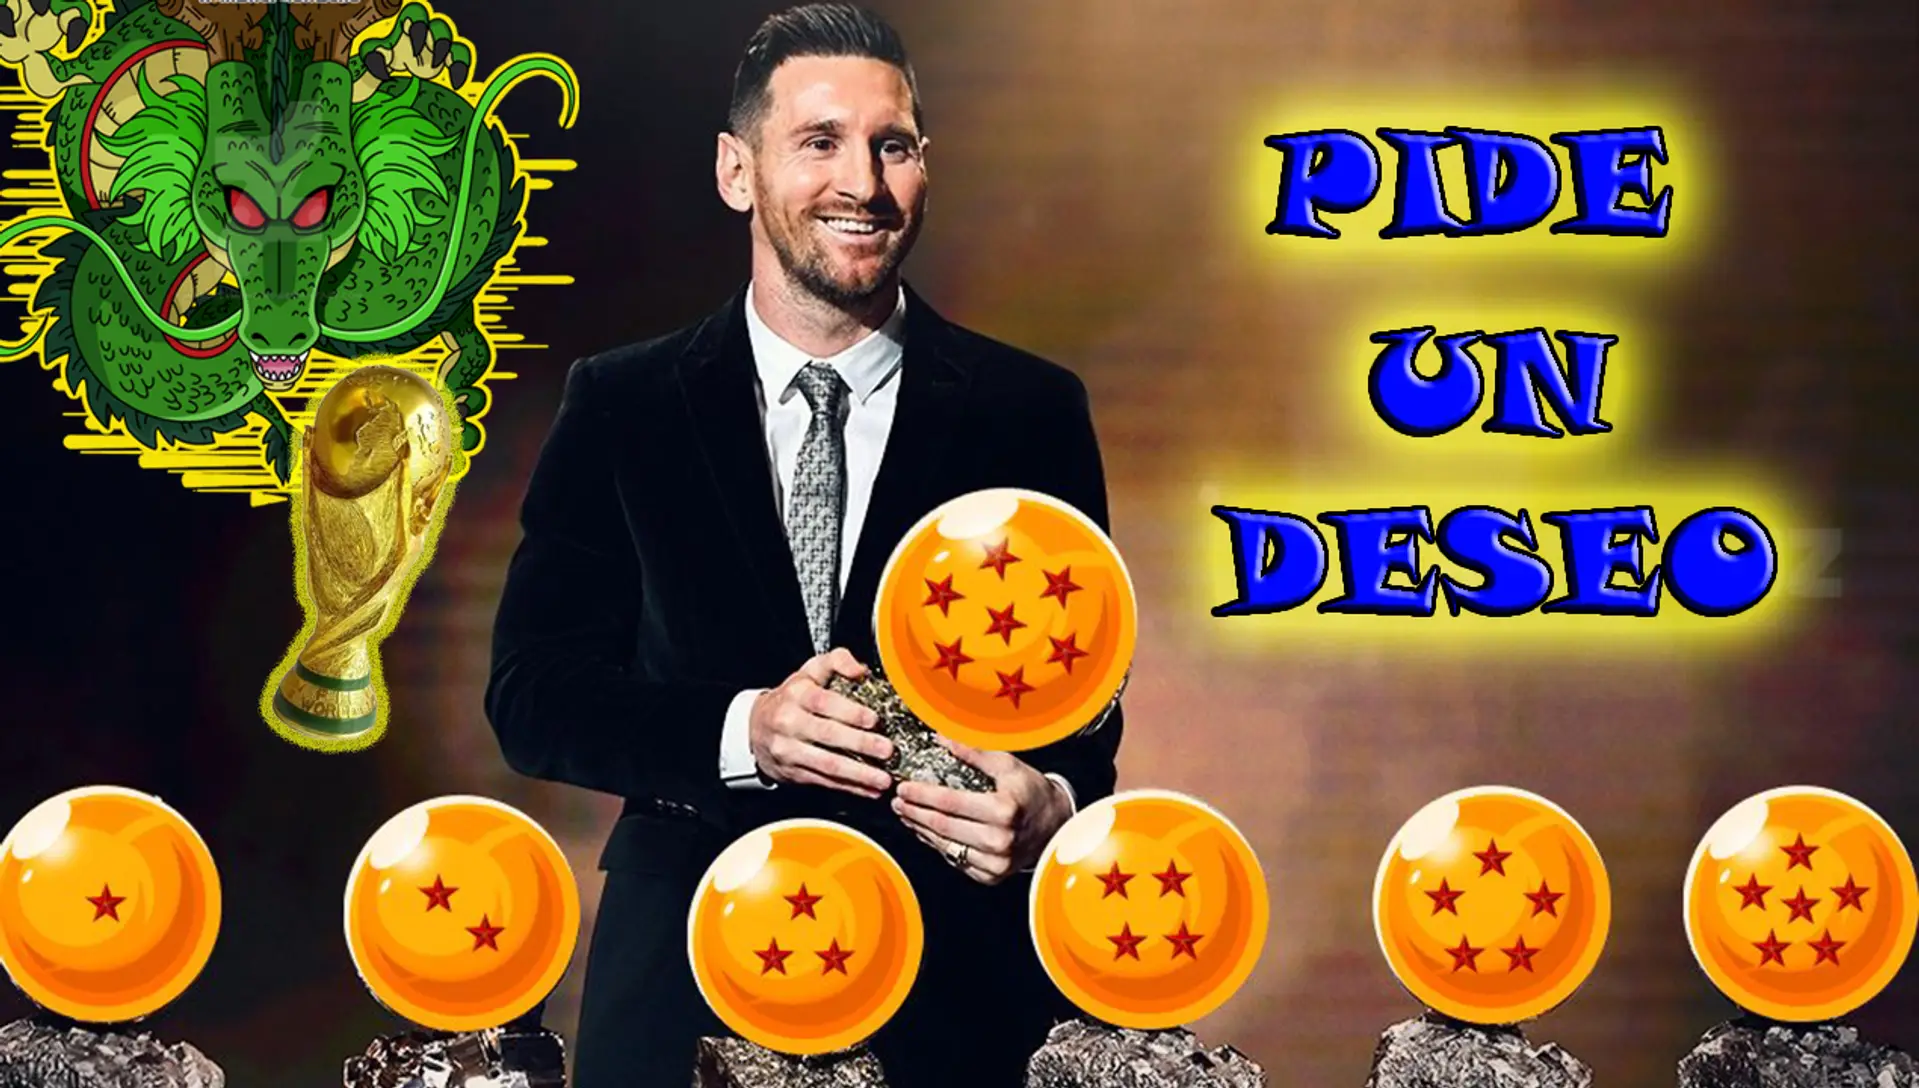 Messi: 7 Balones de Oro y 1 Deseo